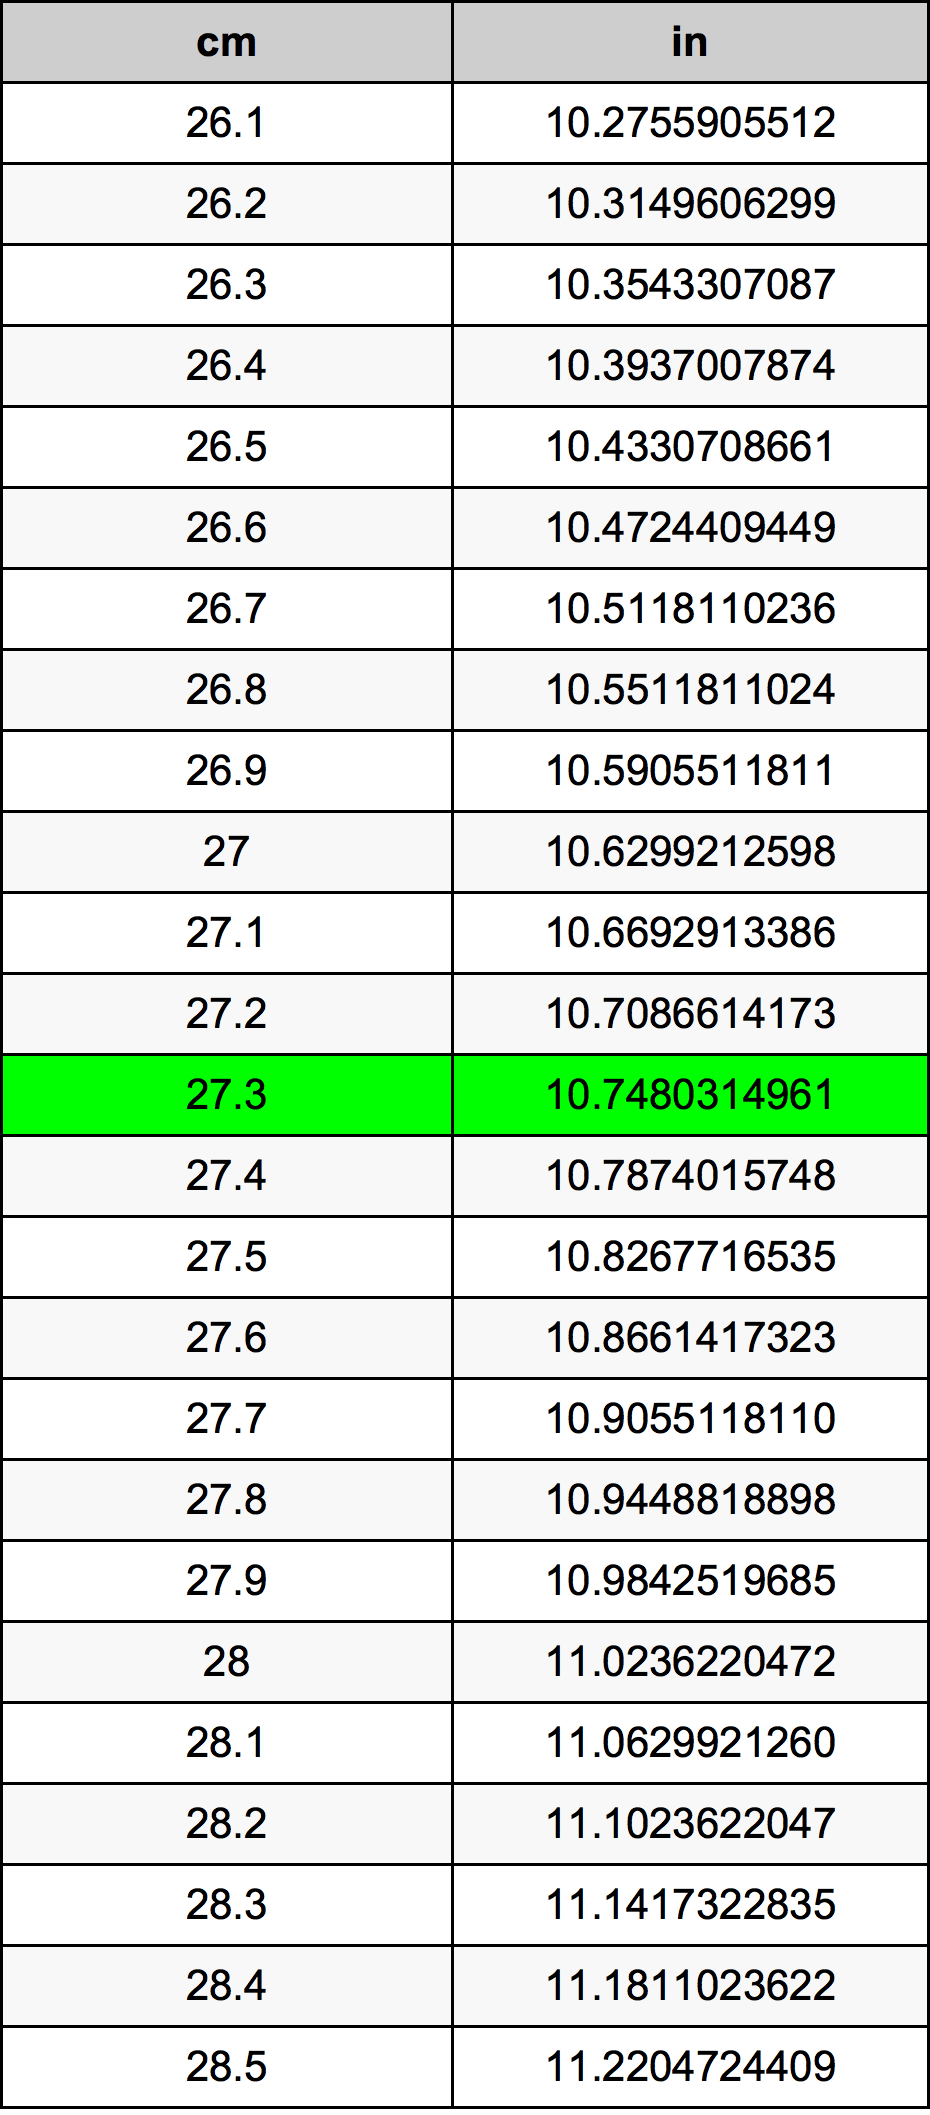 27.3 Centiméter átszámítási táblázat